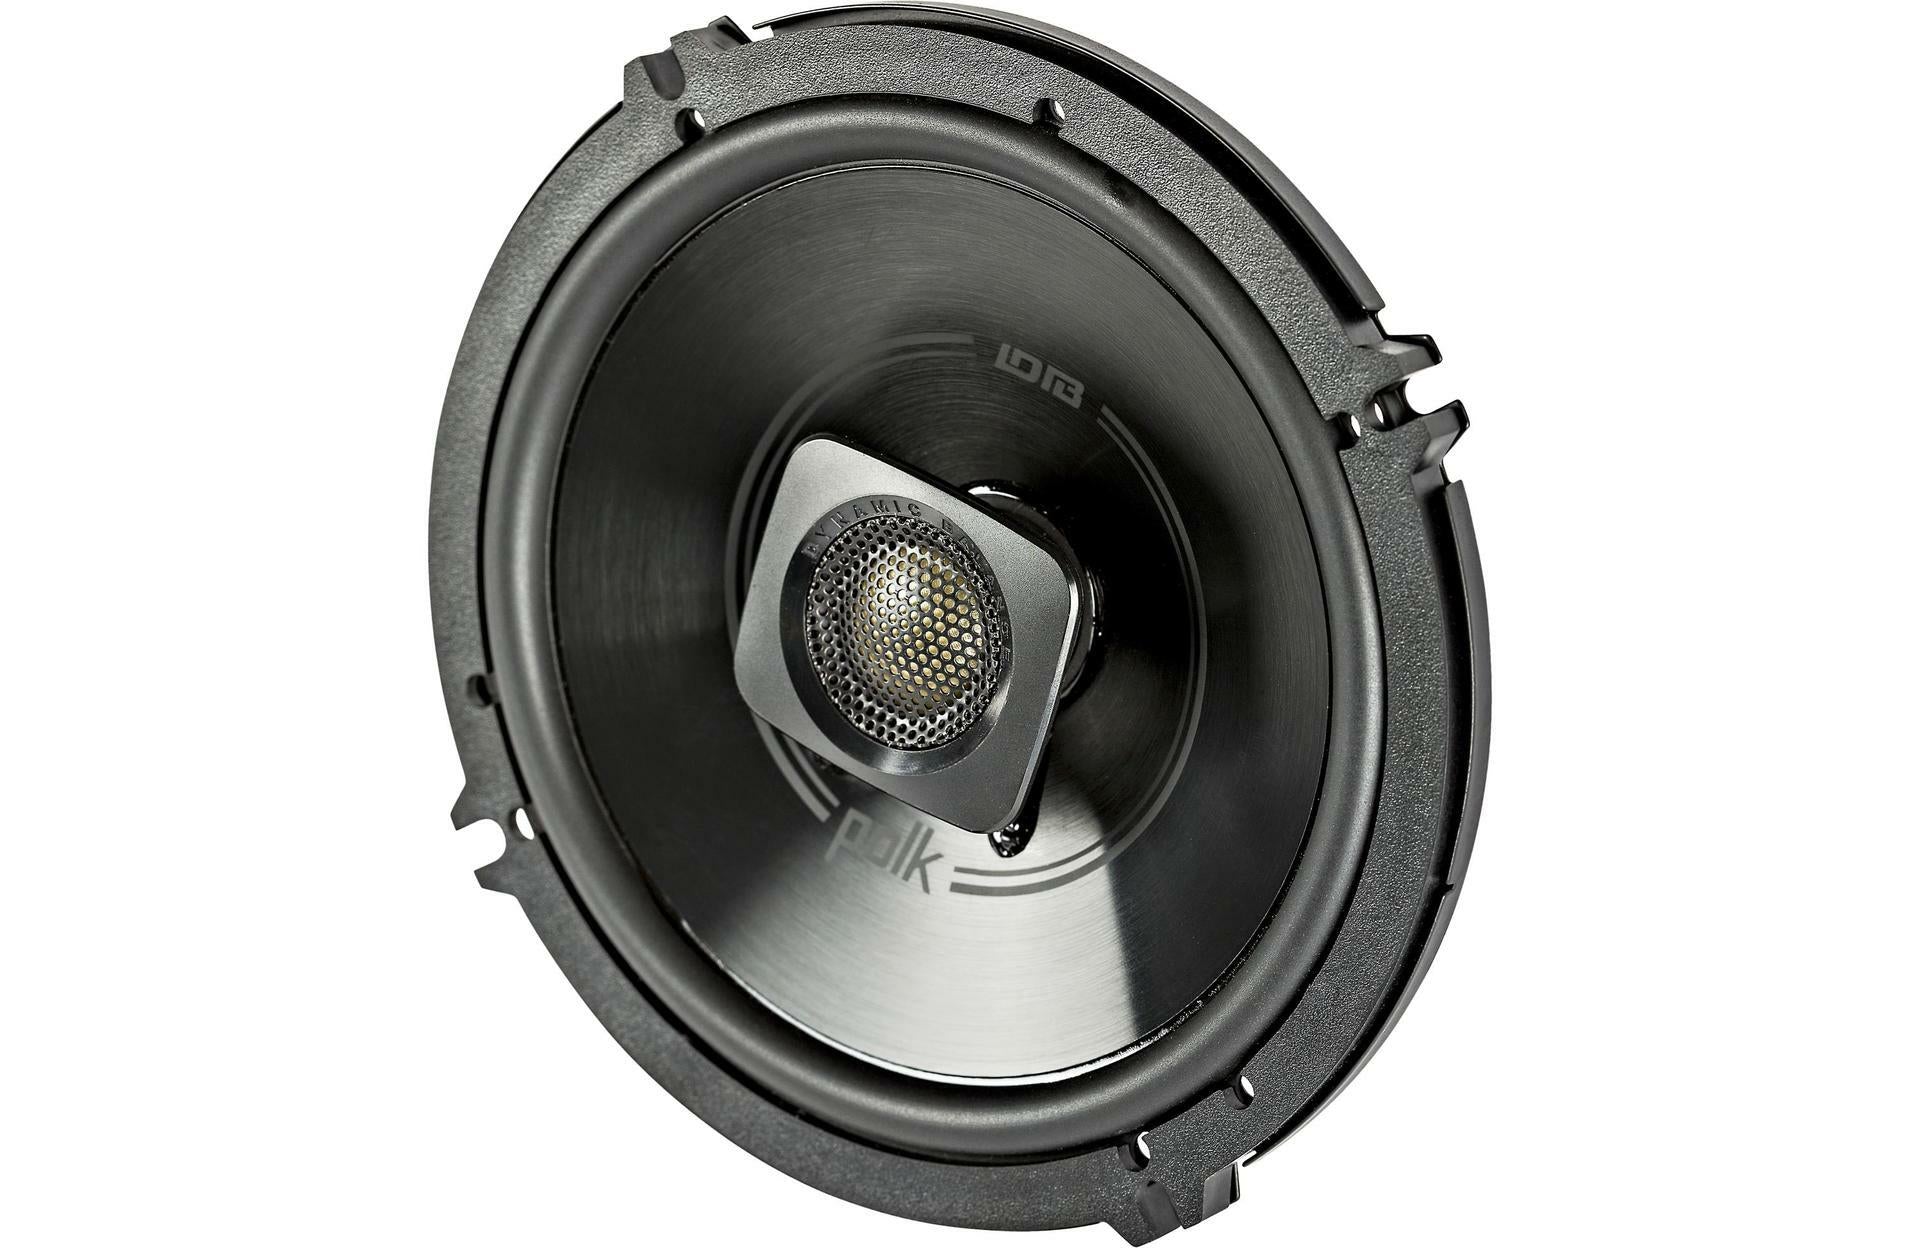 Polk Audio DB 6502 DB+ 6-1/2" Component Speaker + DB652 6-1/2" 2-Way Car Speaker